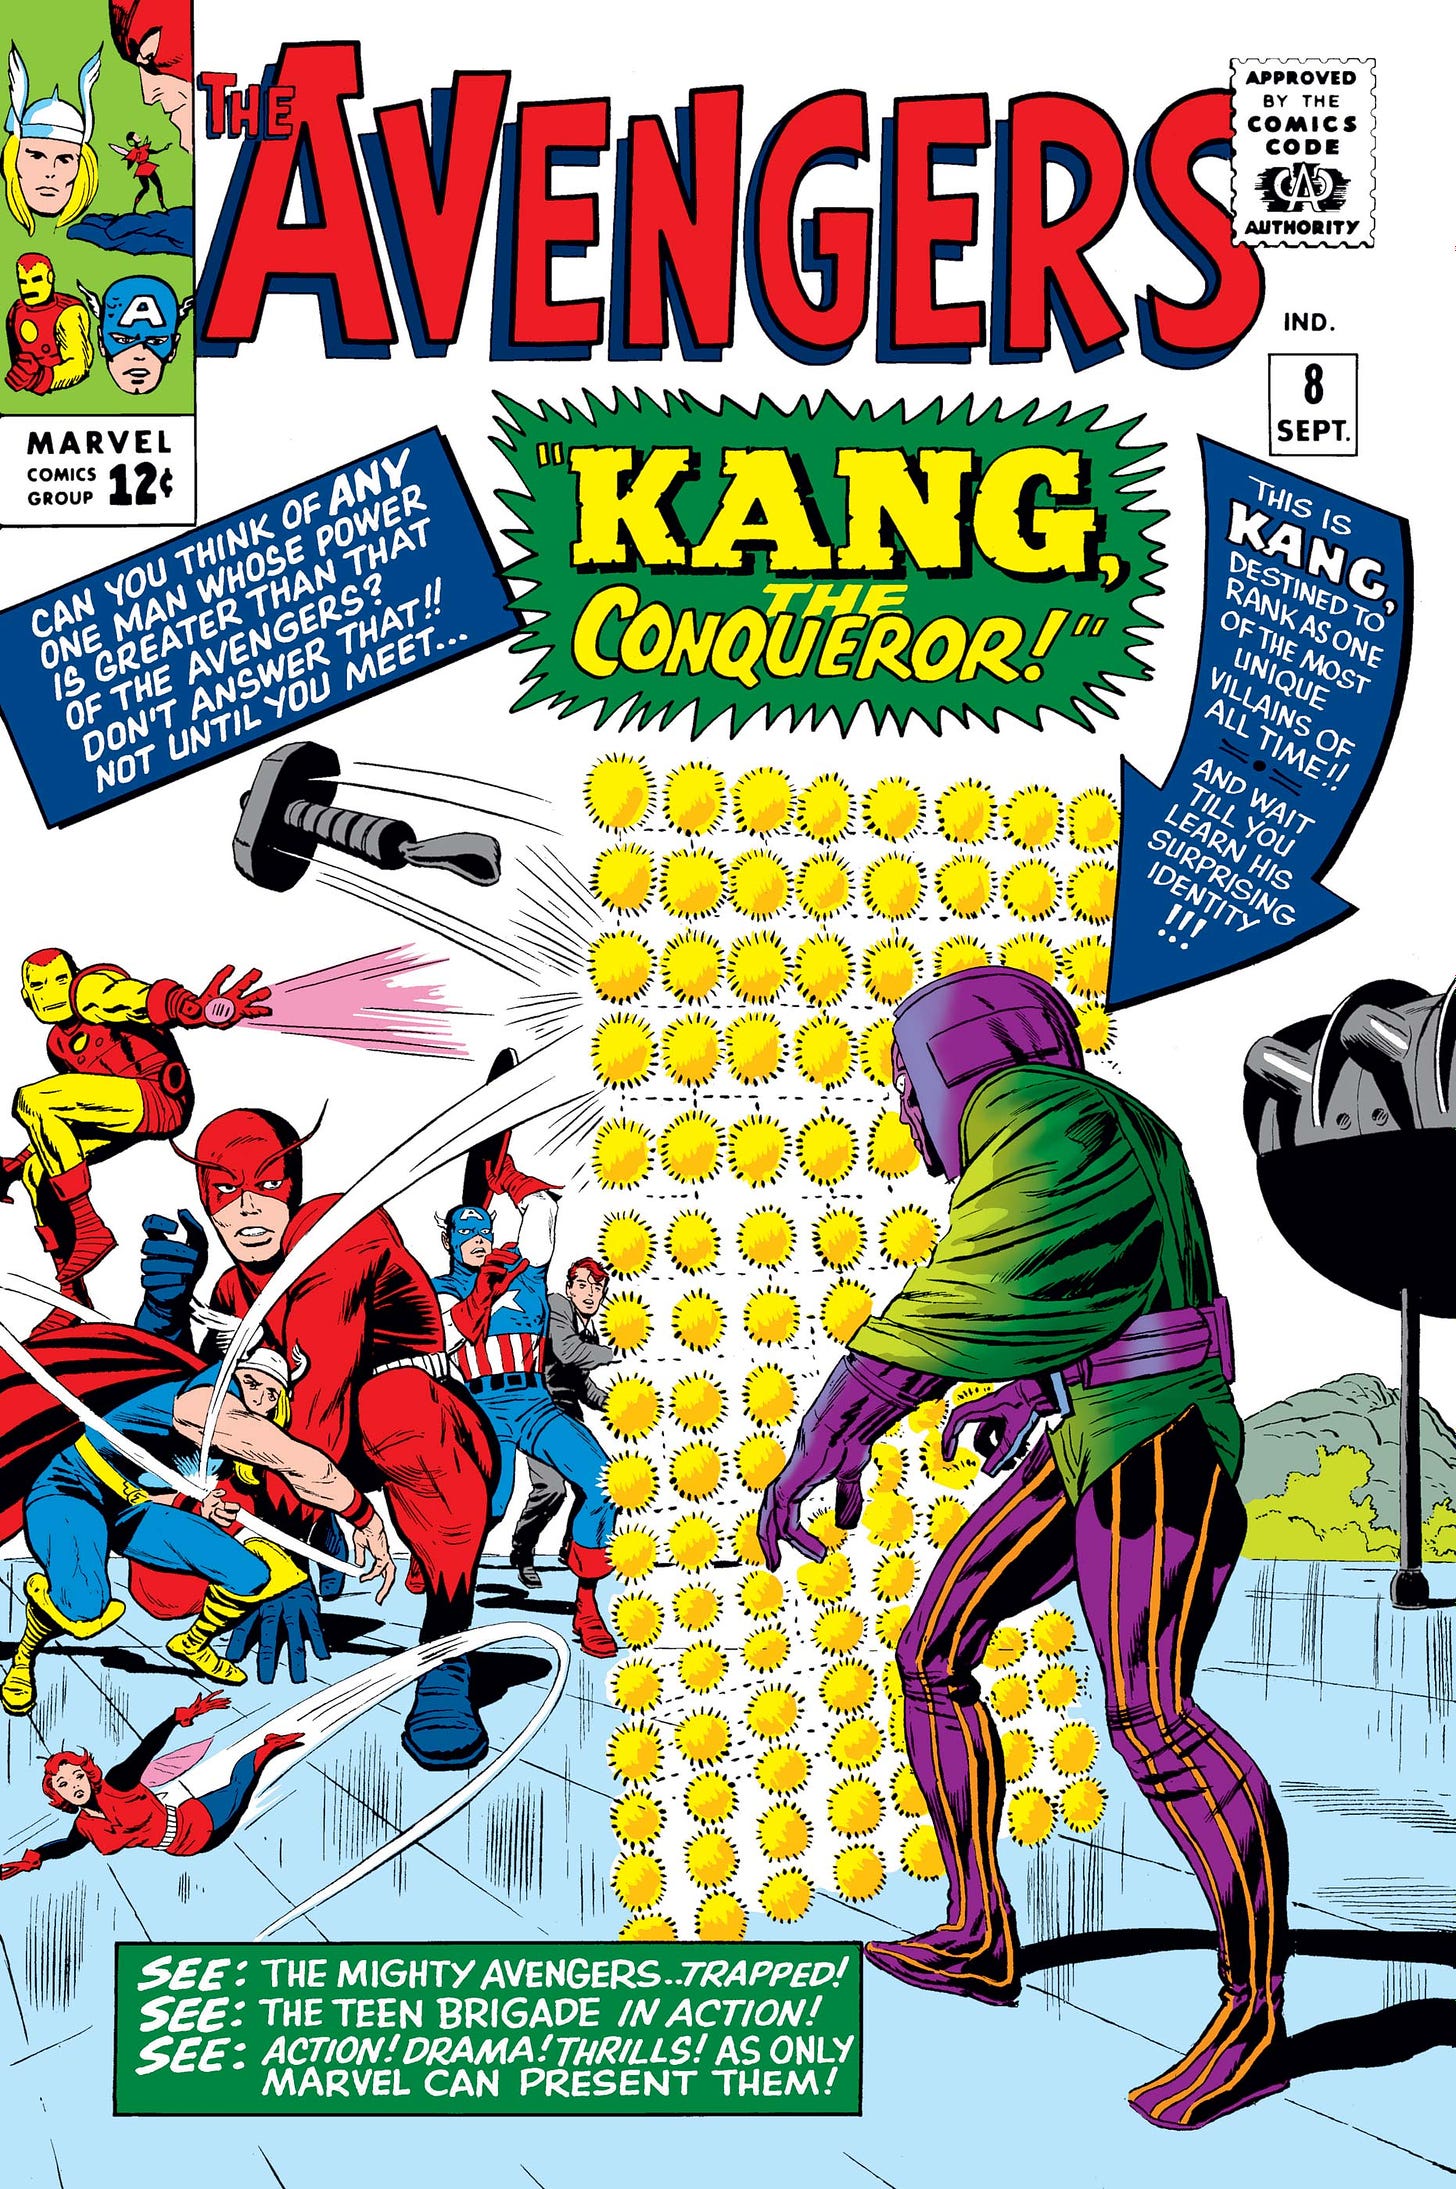 Avengers (1963) #8 | Comic Issues | Marvel